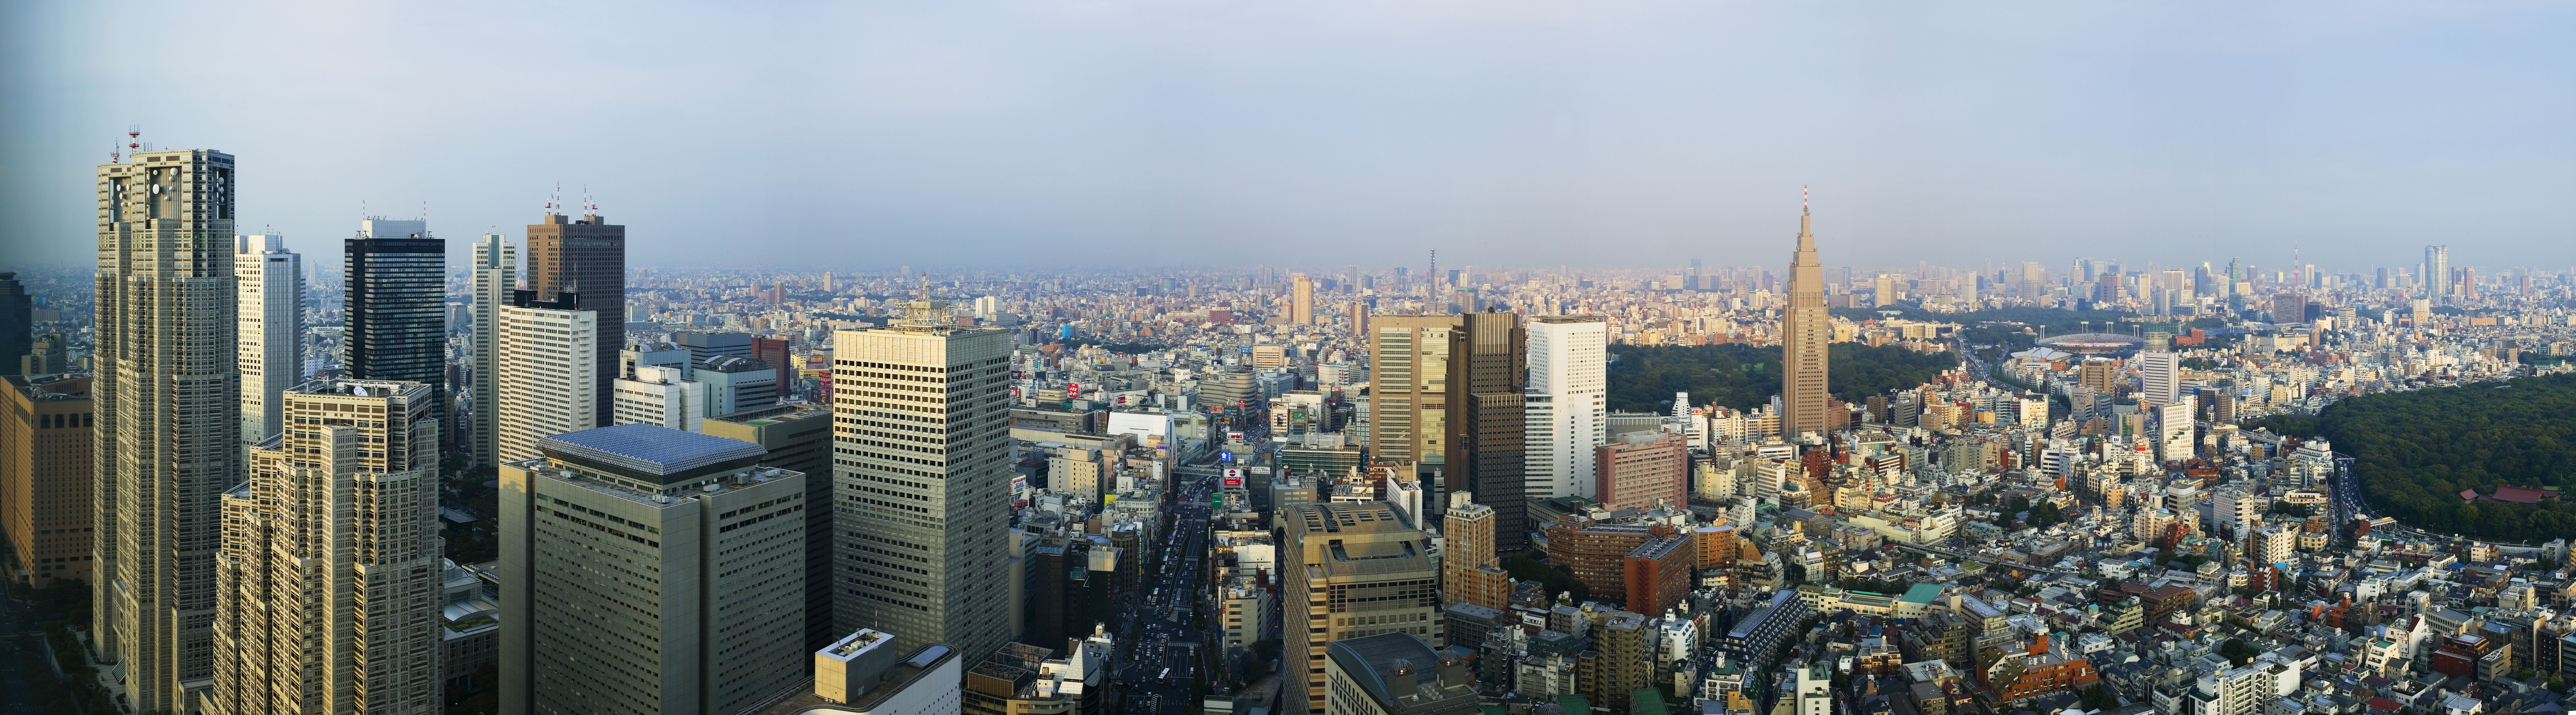 photo, la matire, libre, amnage, dcrivez, photo de la rserve,Shinjuku a dvelopp le centre de ville rcemment, construire, Le Tokyo MetropolitGovernment bureau, DoCoMo dominent, autoroute nationale